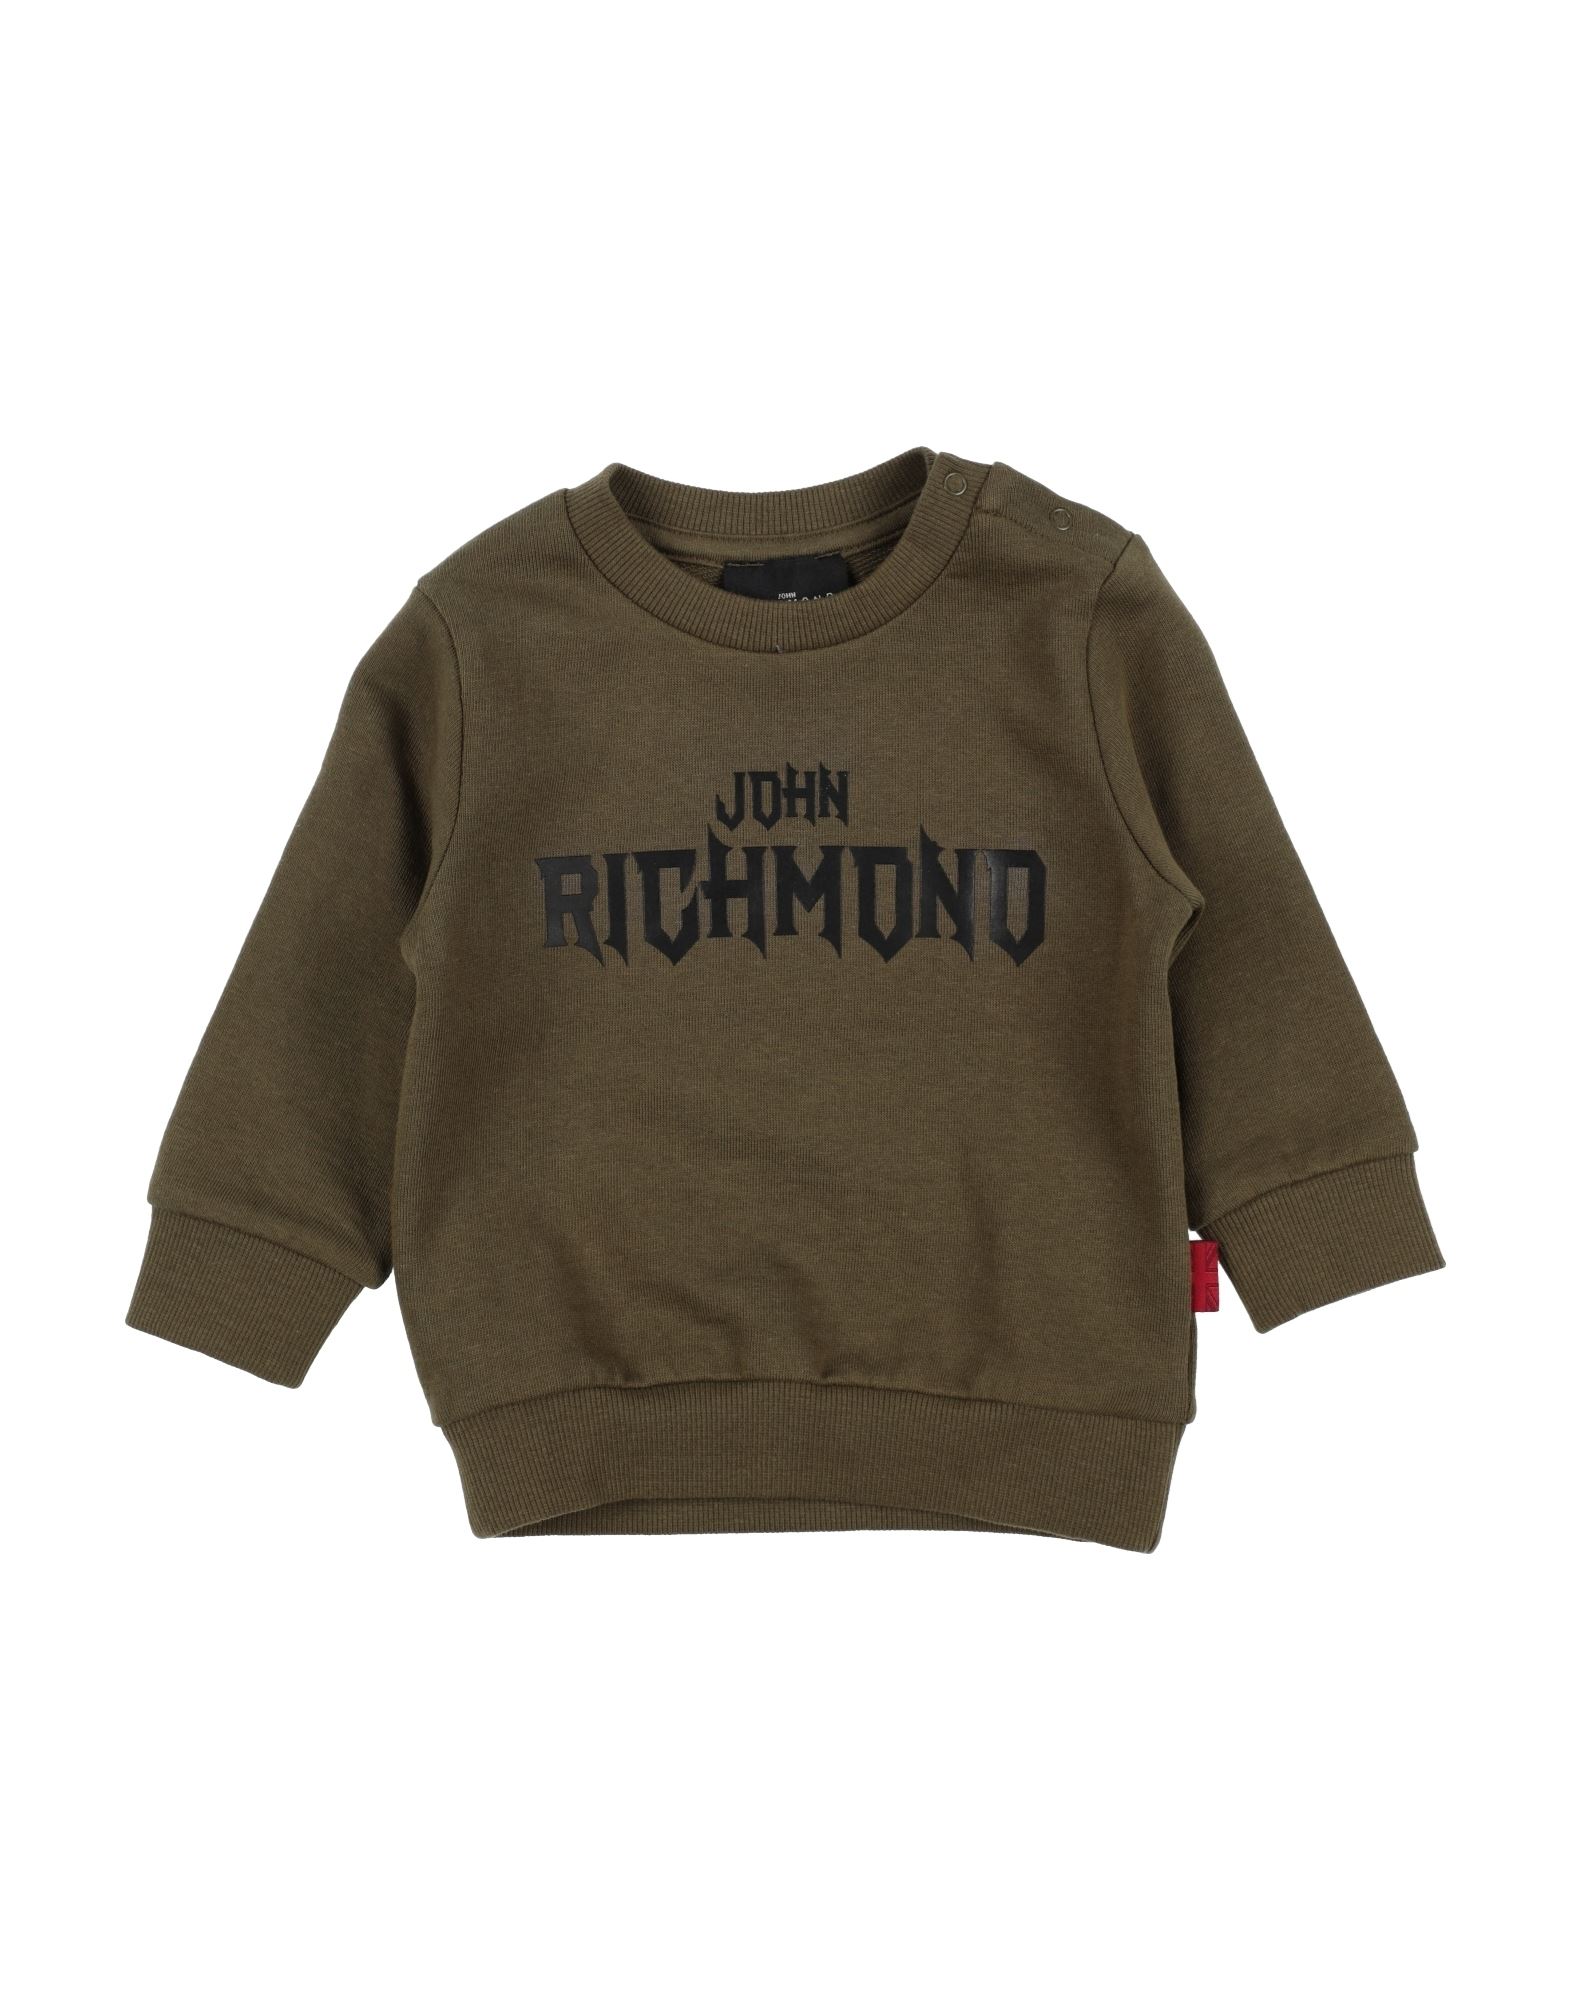 JOHN RICHMOND Sweatshirt Kinder Militärgrün von JOHN RICHMOND